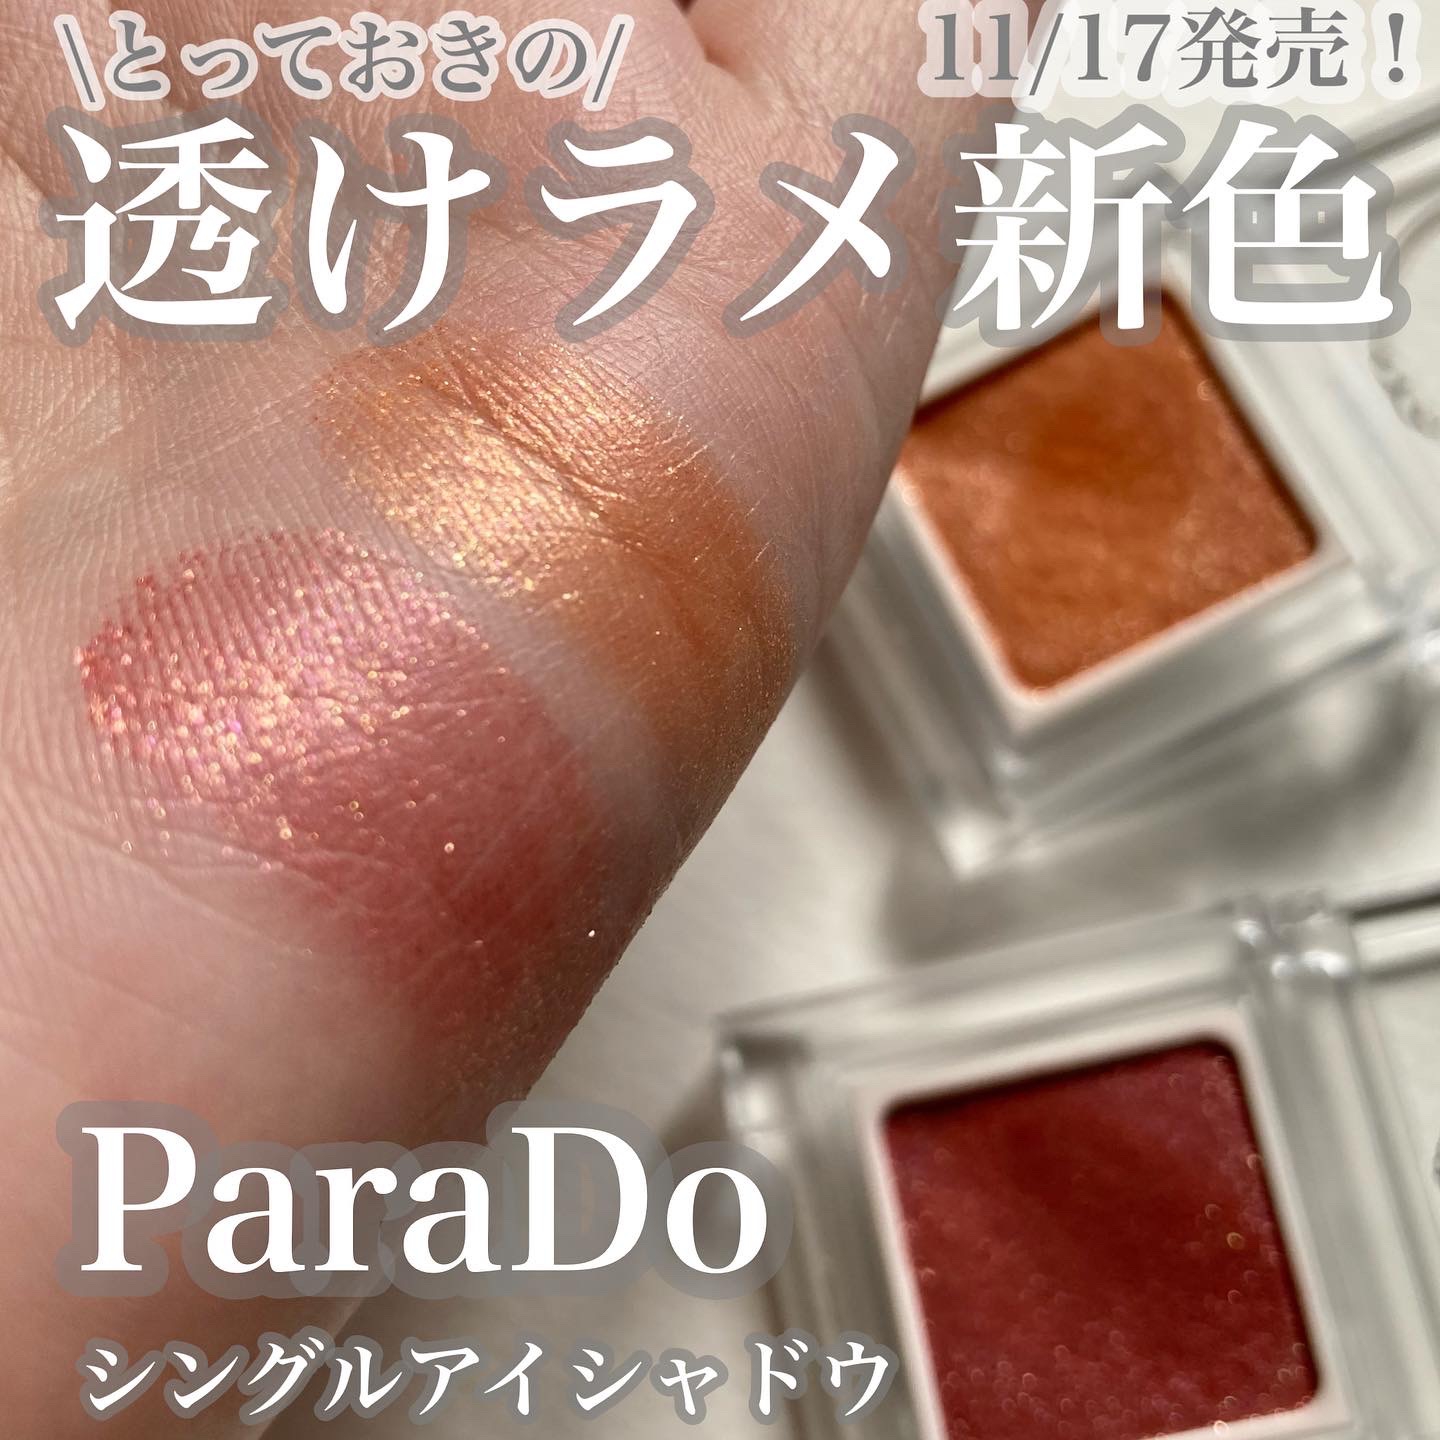 ParaDo(パラドゥ) シングルアイシャドウの良い点・メリットに関する☆ふくすけ☆さんの口コミ画像1